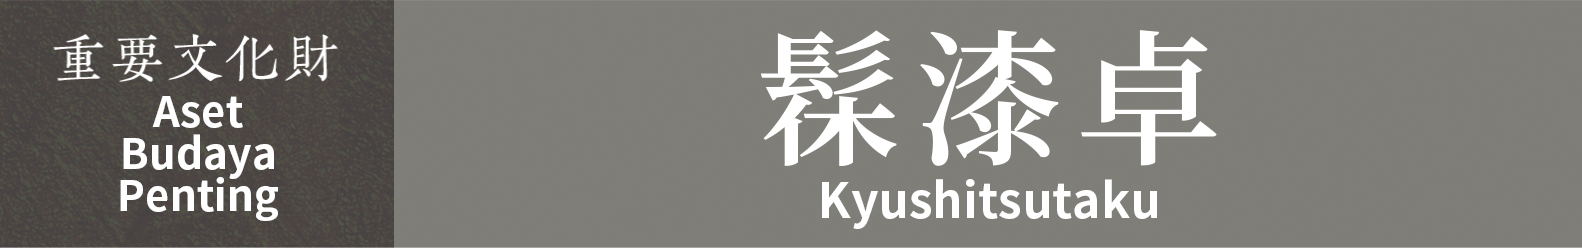 Aset Budaya Penting　Kyushitsutaku